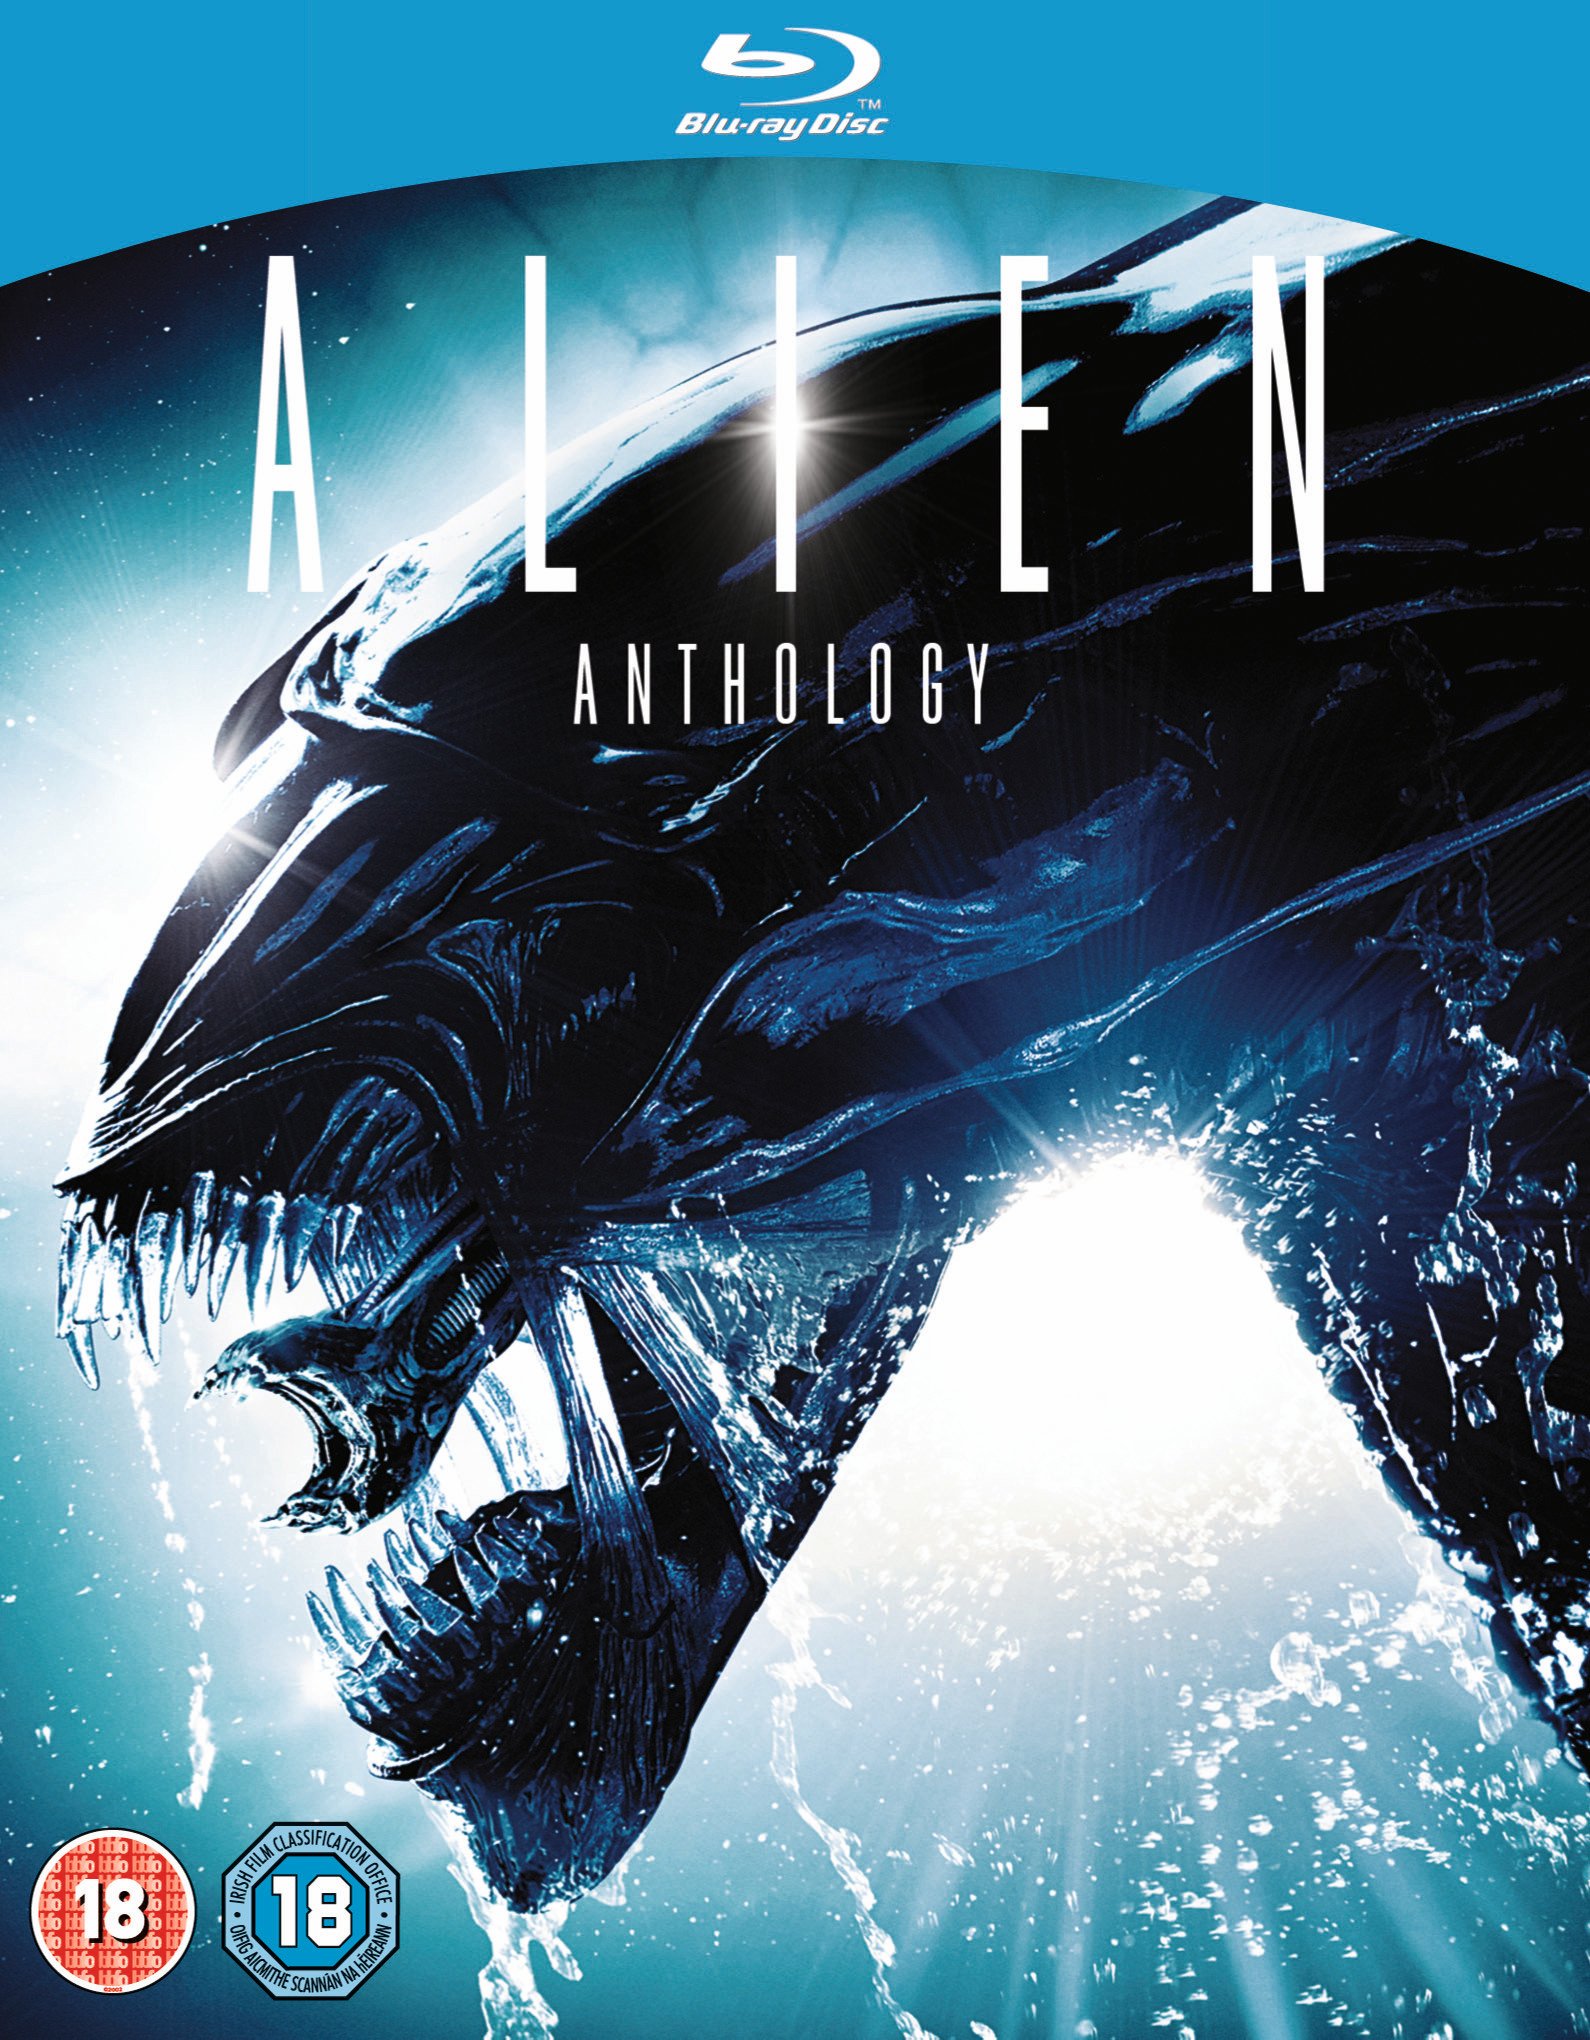 Alien Quadrilogy. Review